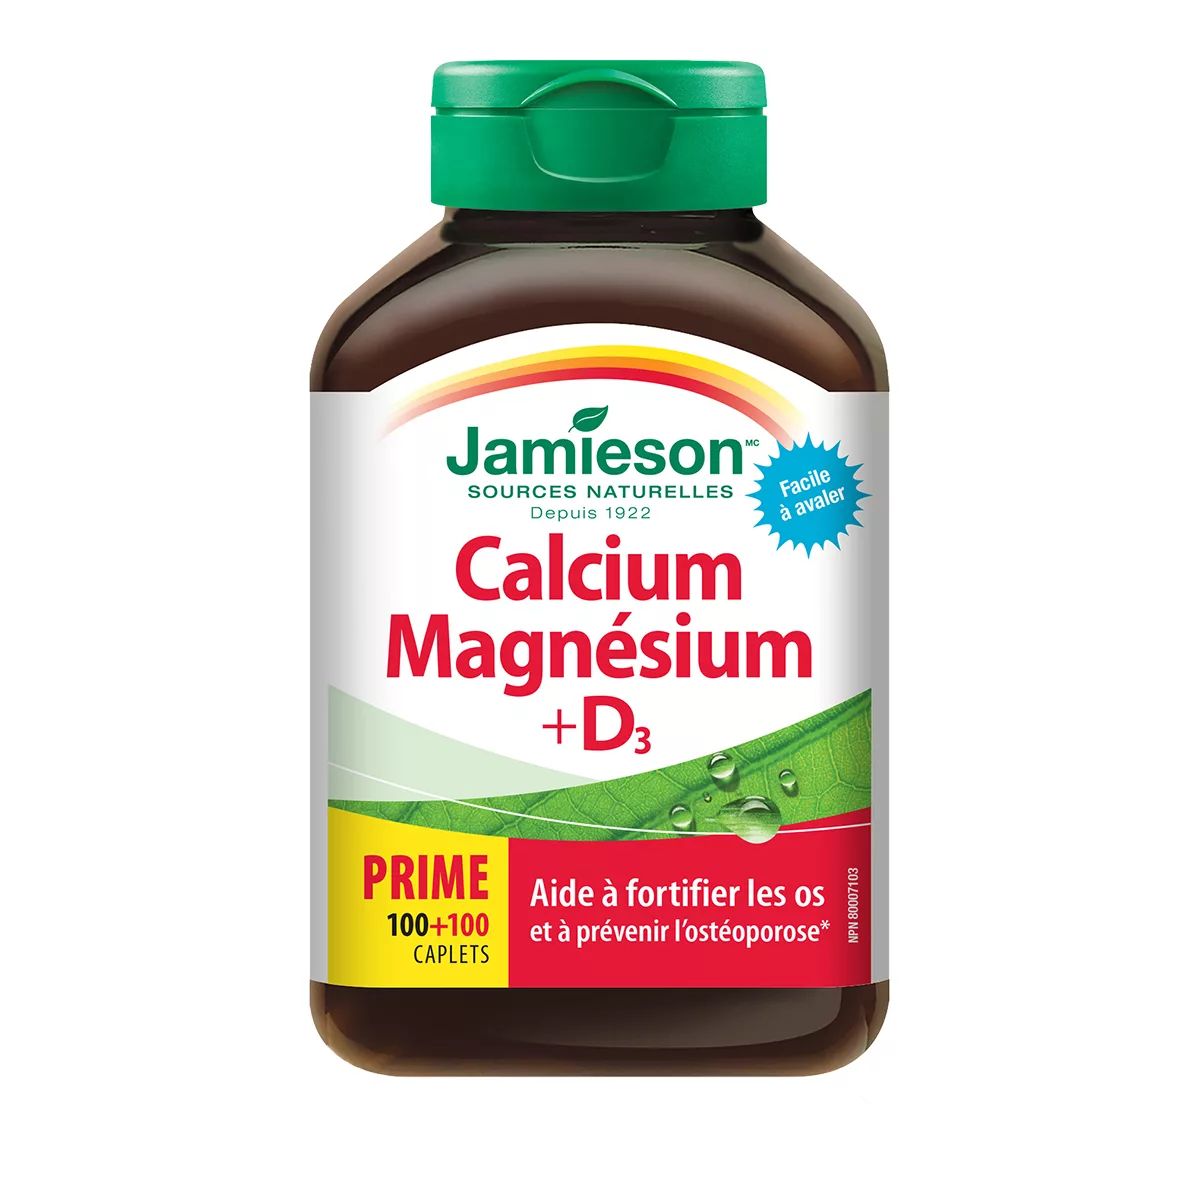 Image of Jamieson Calcium Magnesium And Vitamin D3